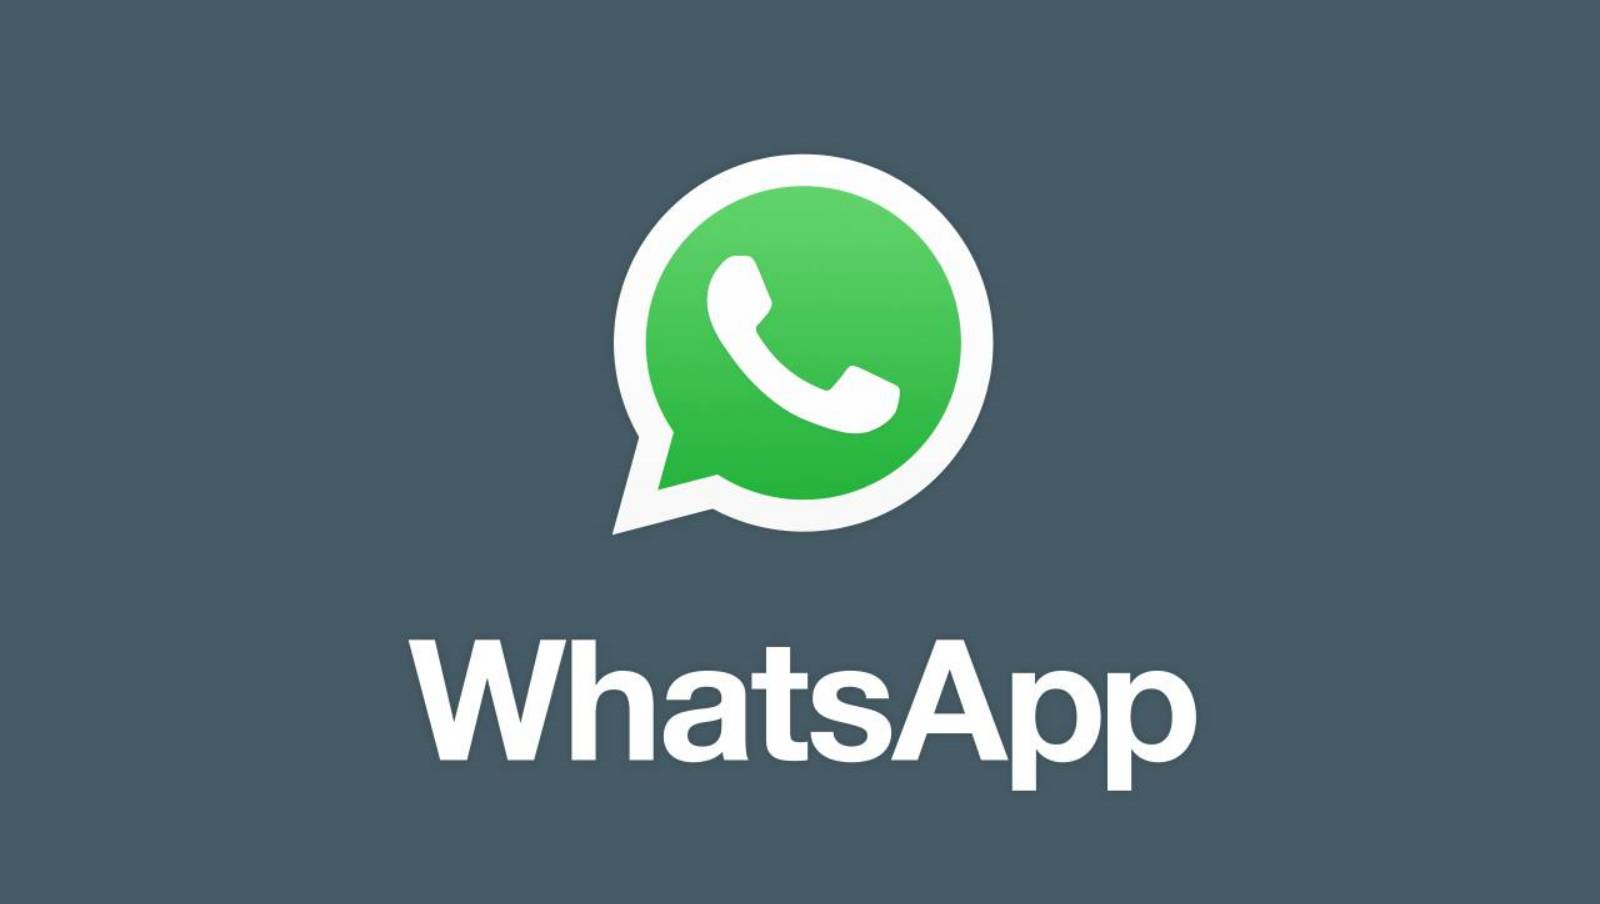 WhatsApp search